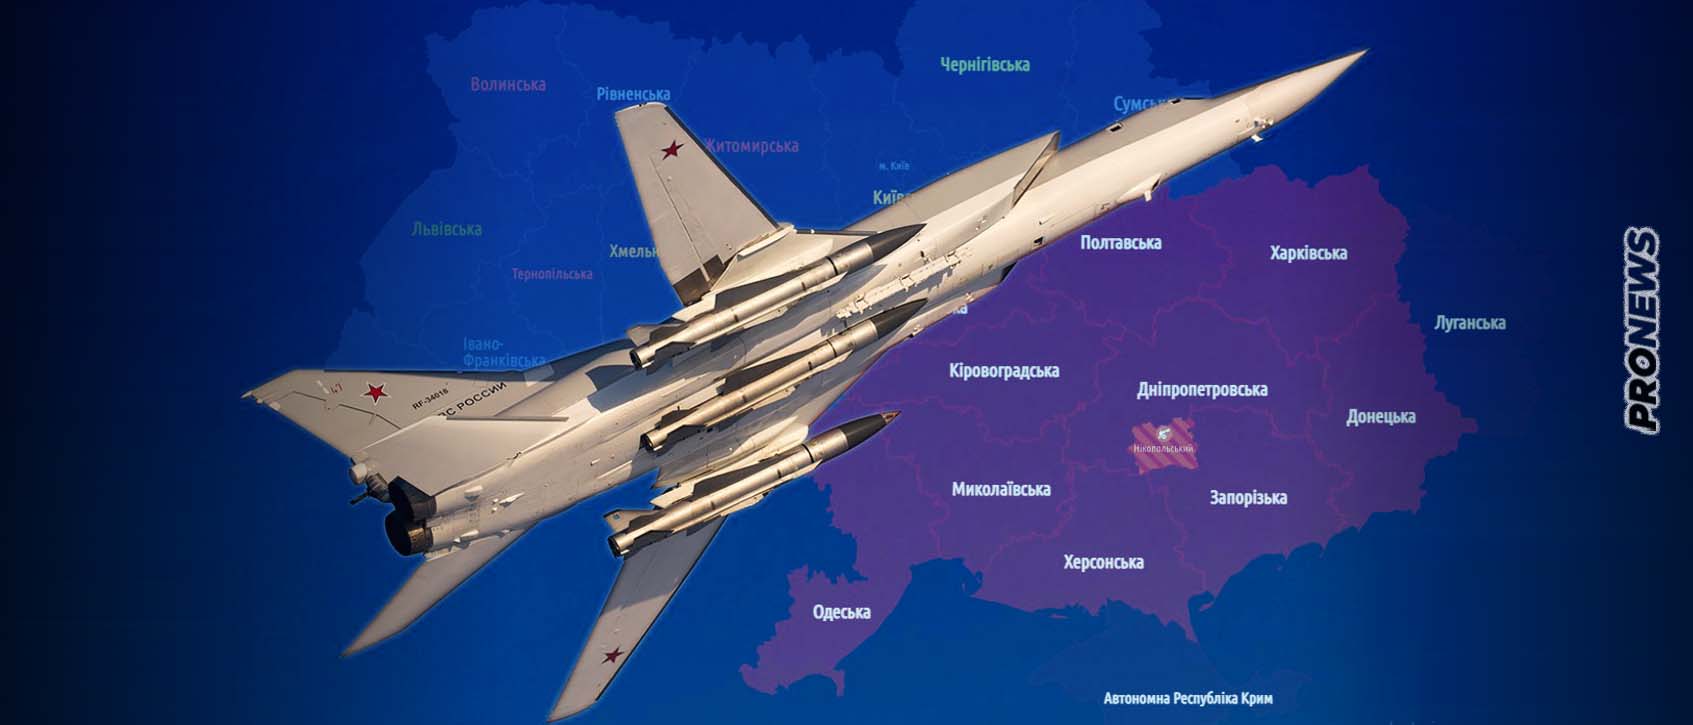 Ρωσικά στρατηγικά βομβαρδιστικά έπληξαν μεγάλες περιφέρειες της Ουκρανίας